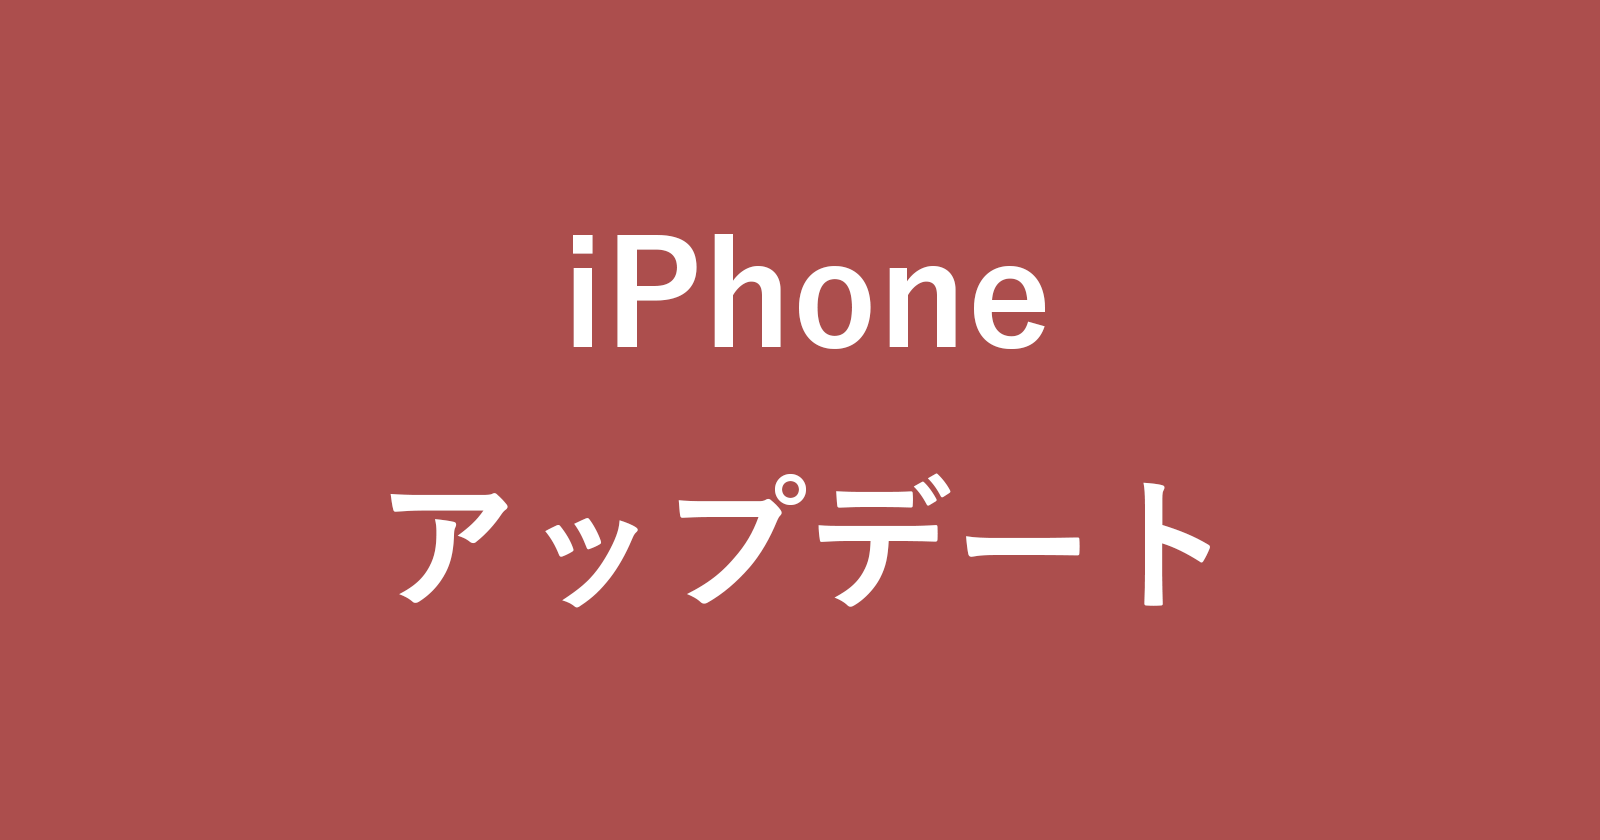 iphone ios update